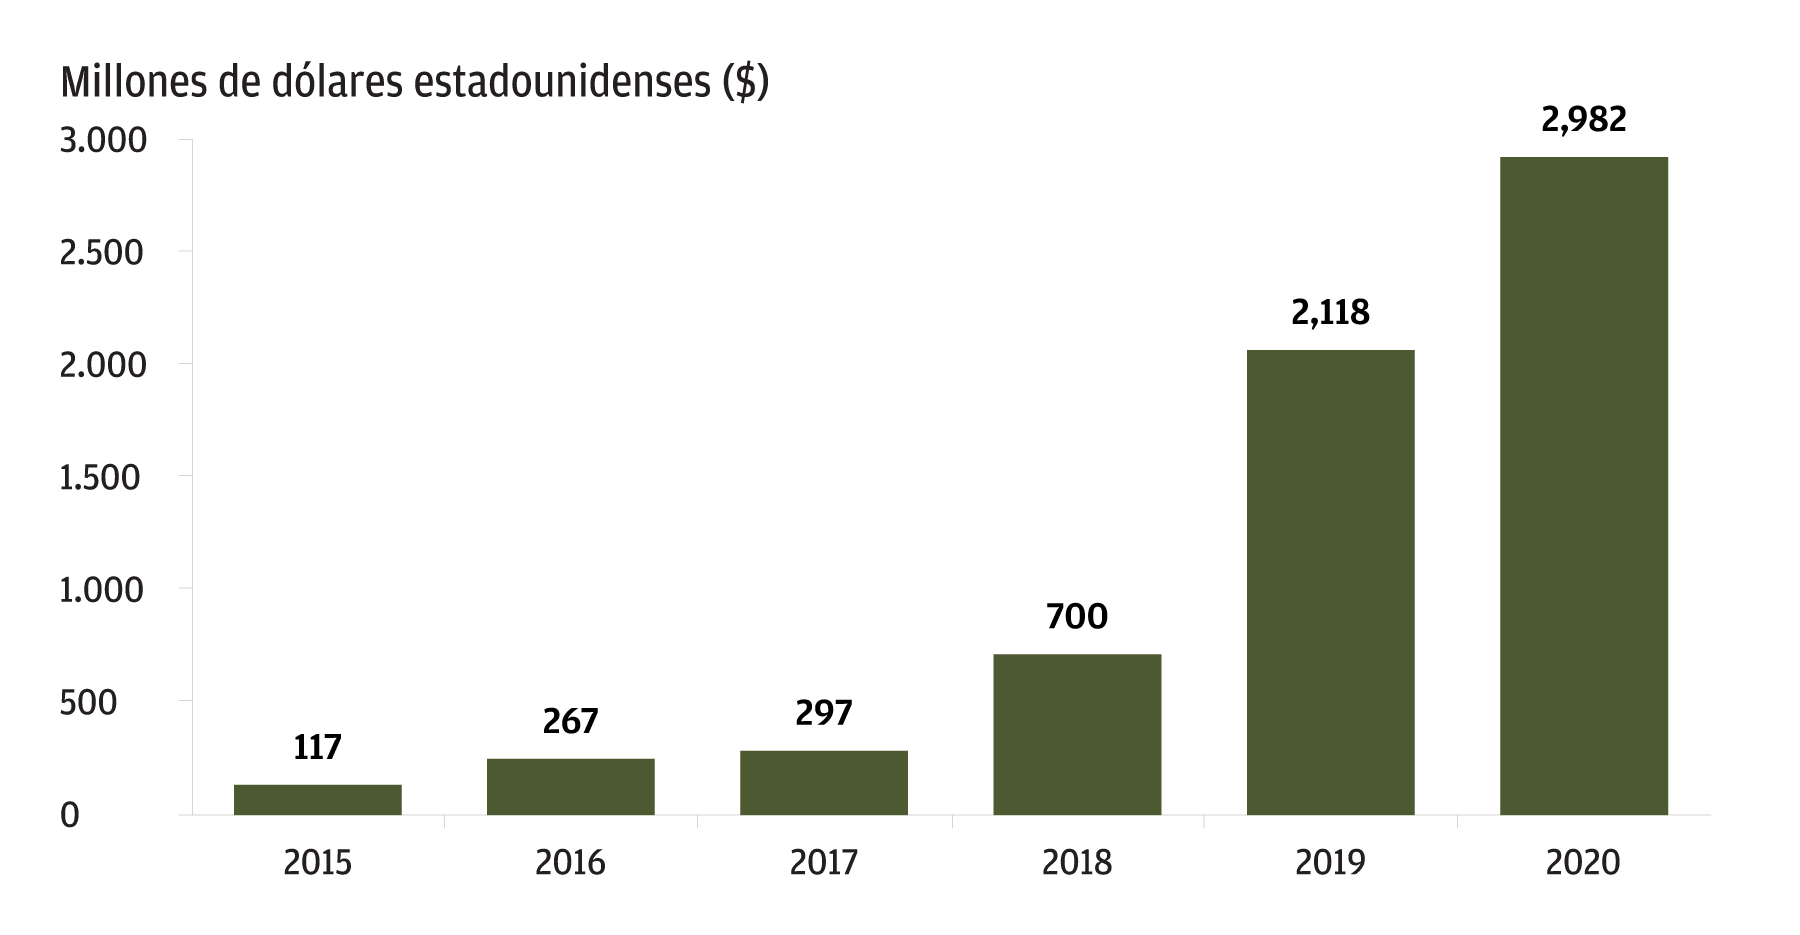 El gráfico muestra la financiación anual para empresas Fintech en América Latina para el periodo comprendido entre los años 2015 al 2020 medido en millones de dólares estadounidenses. En 2015 se registró una financiación total de 117 millones de dólares y en 2020 la cifra fue de 2.982. Por lo tanto, la inversión fintech en la región se ha multiplicado por 25 desde el 2015.